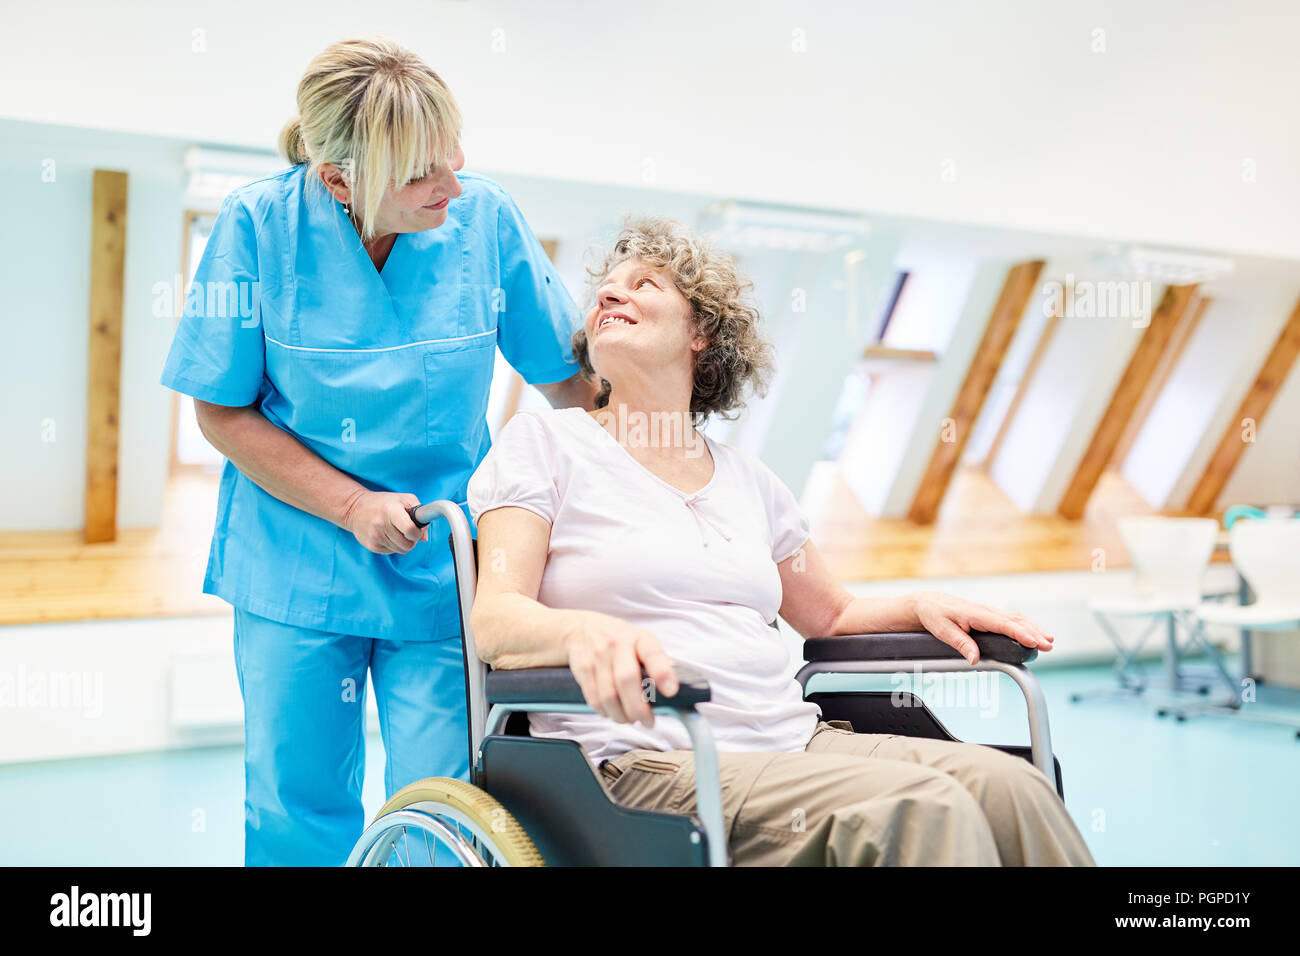 Le fournisseur de soins prend soin d'un senior femme dans un fauteuil roulant à rehab Banque D'Images